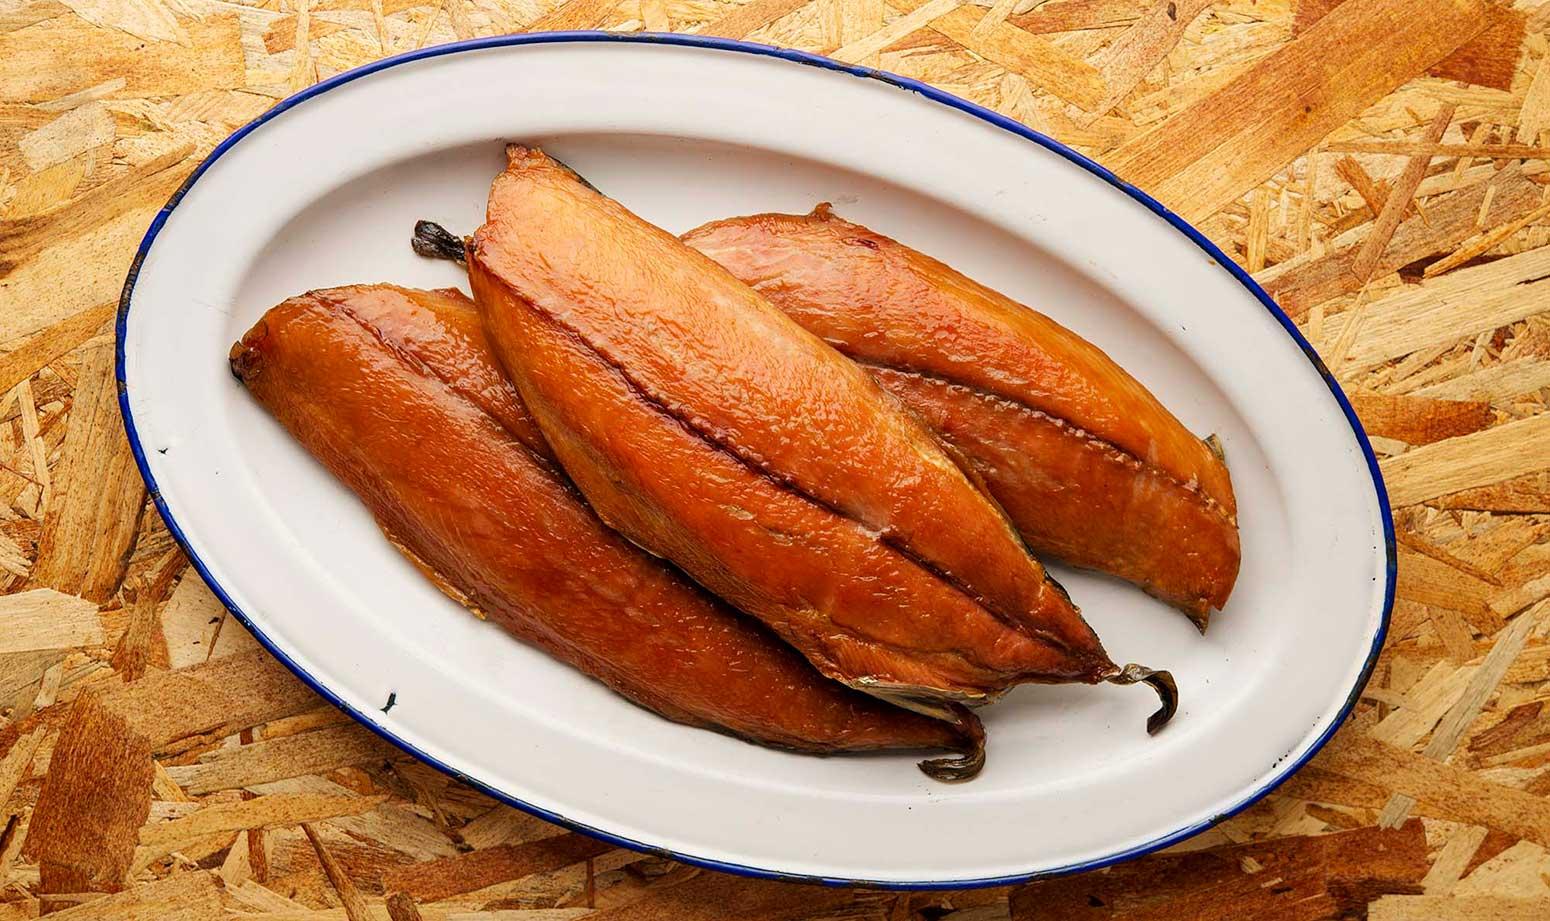 Three fillets of smoked bonito fish on a platter.